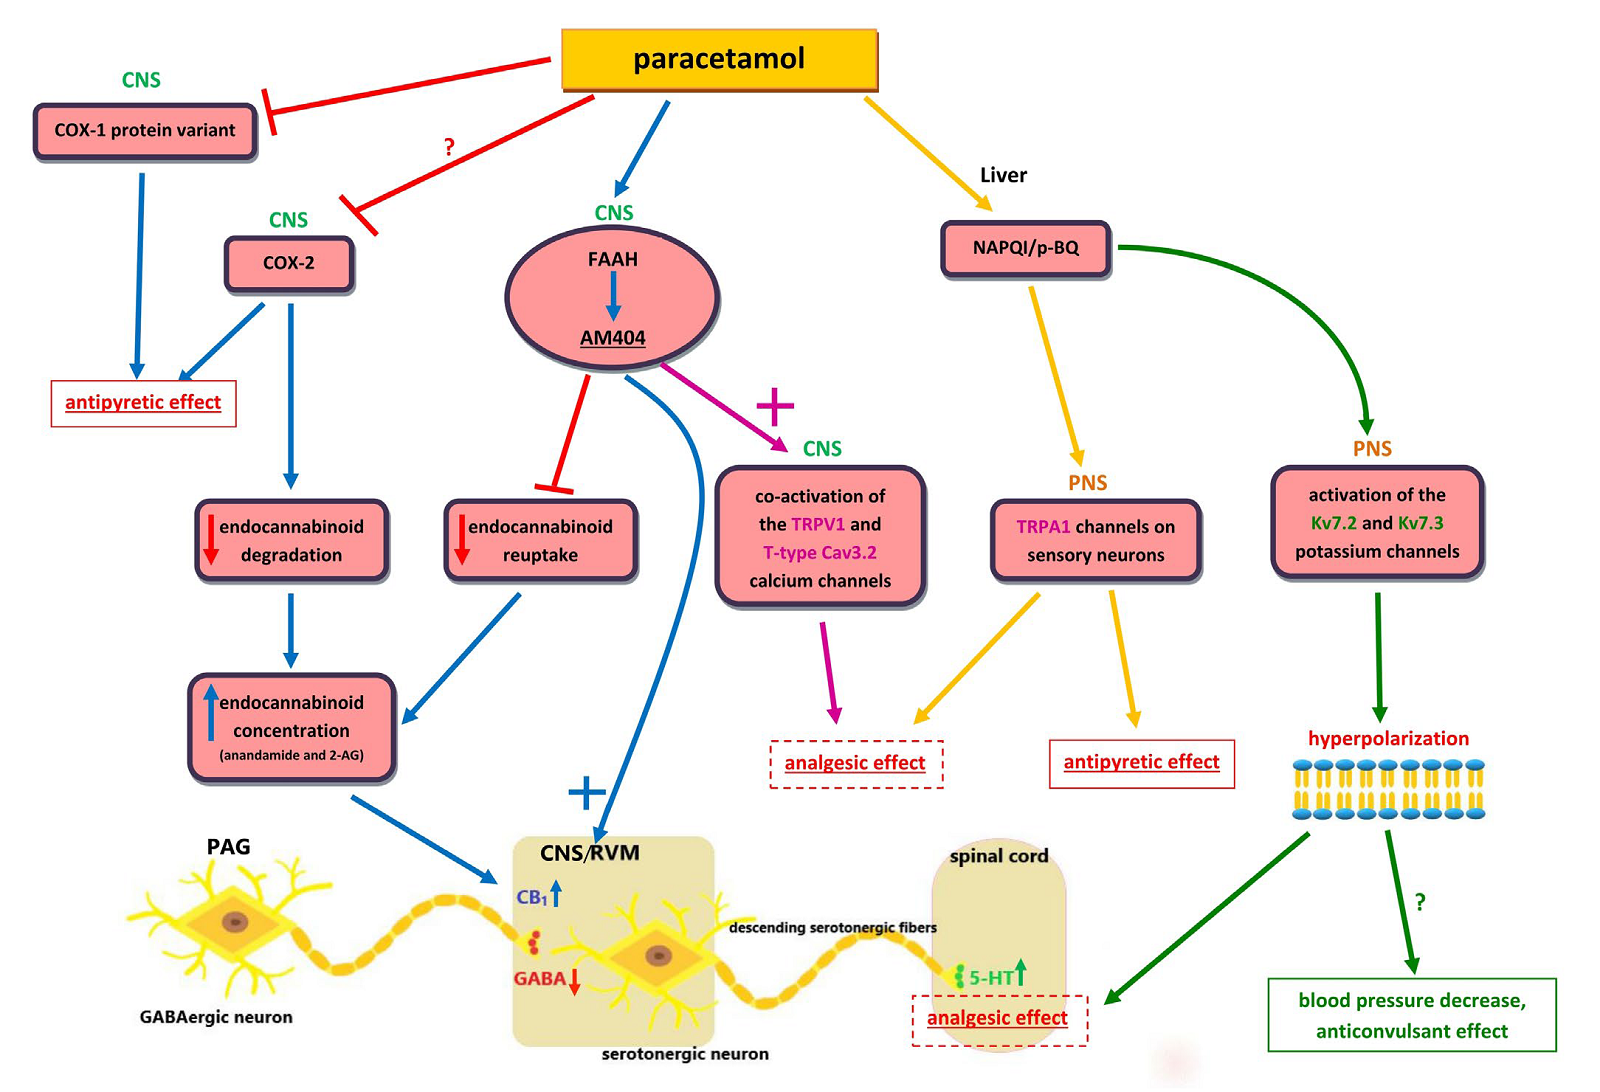 Возможный сценарий действия парацетамола на центральную нервную систему (CNS) и печень